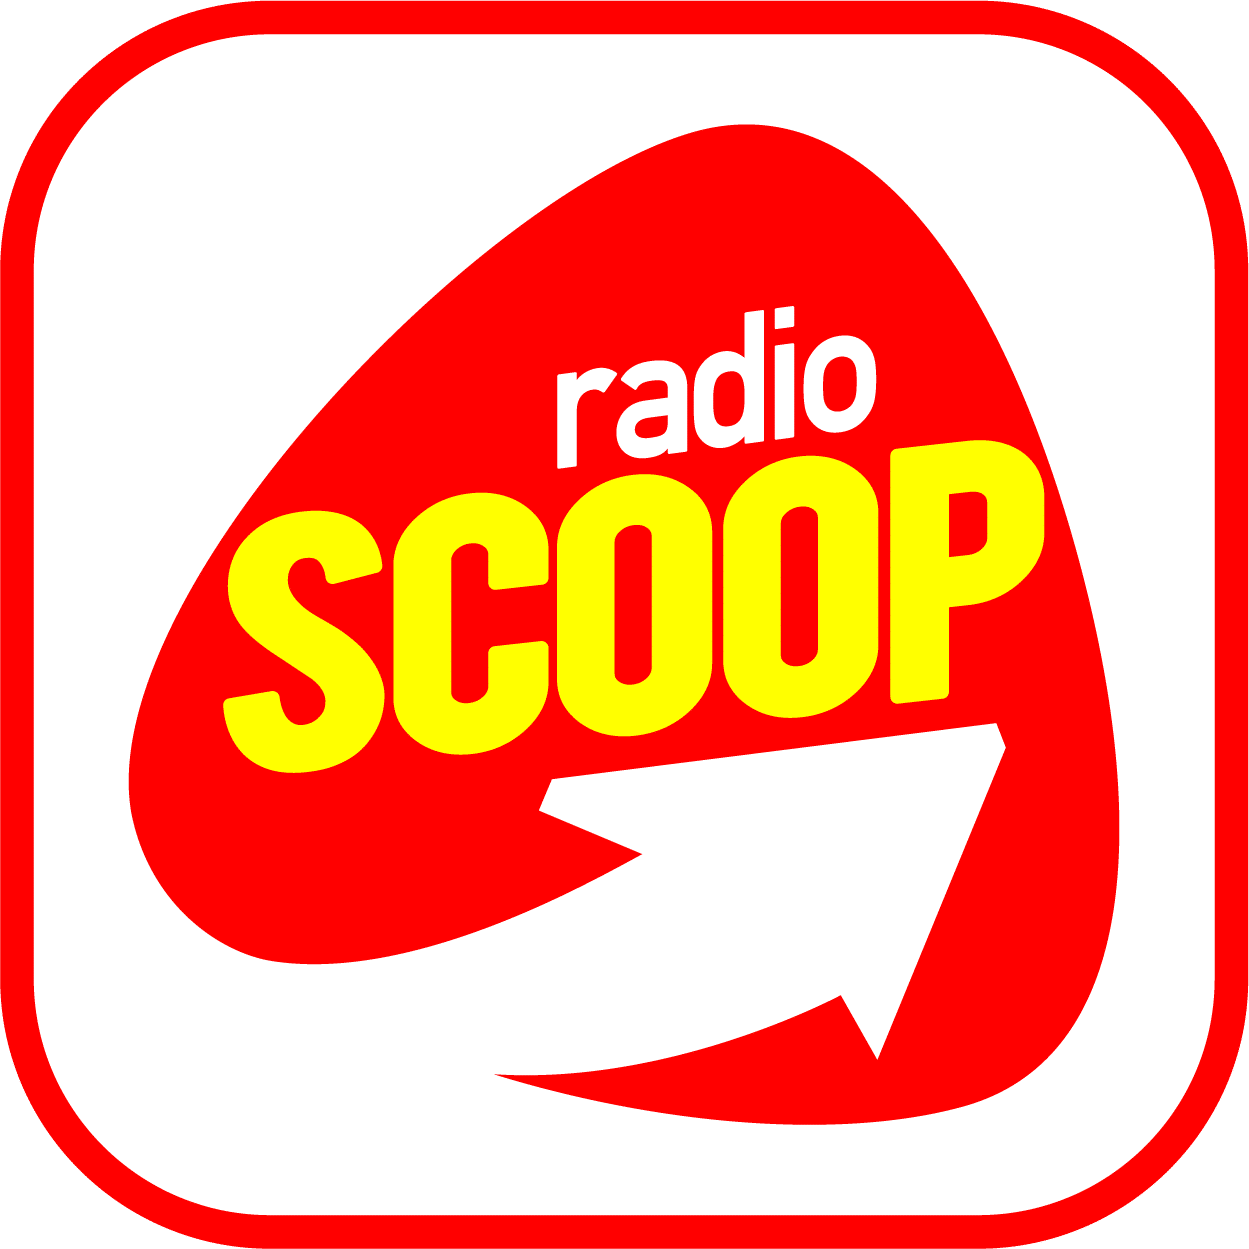 LOGO-RADIO-SCOOP-2018